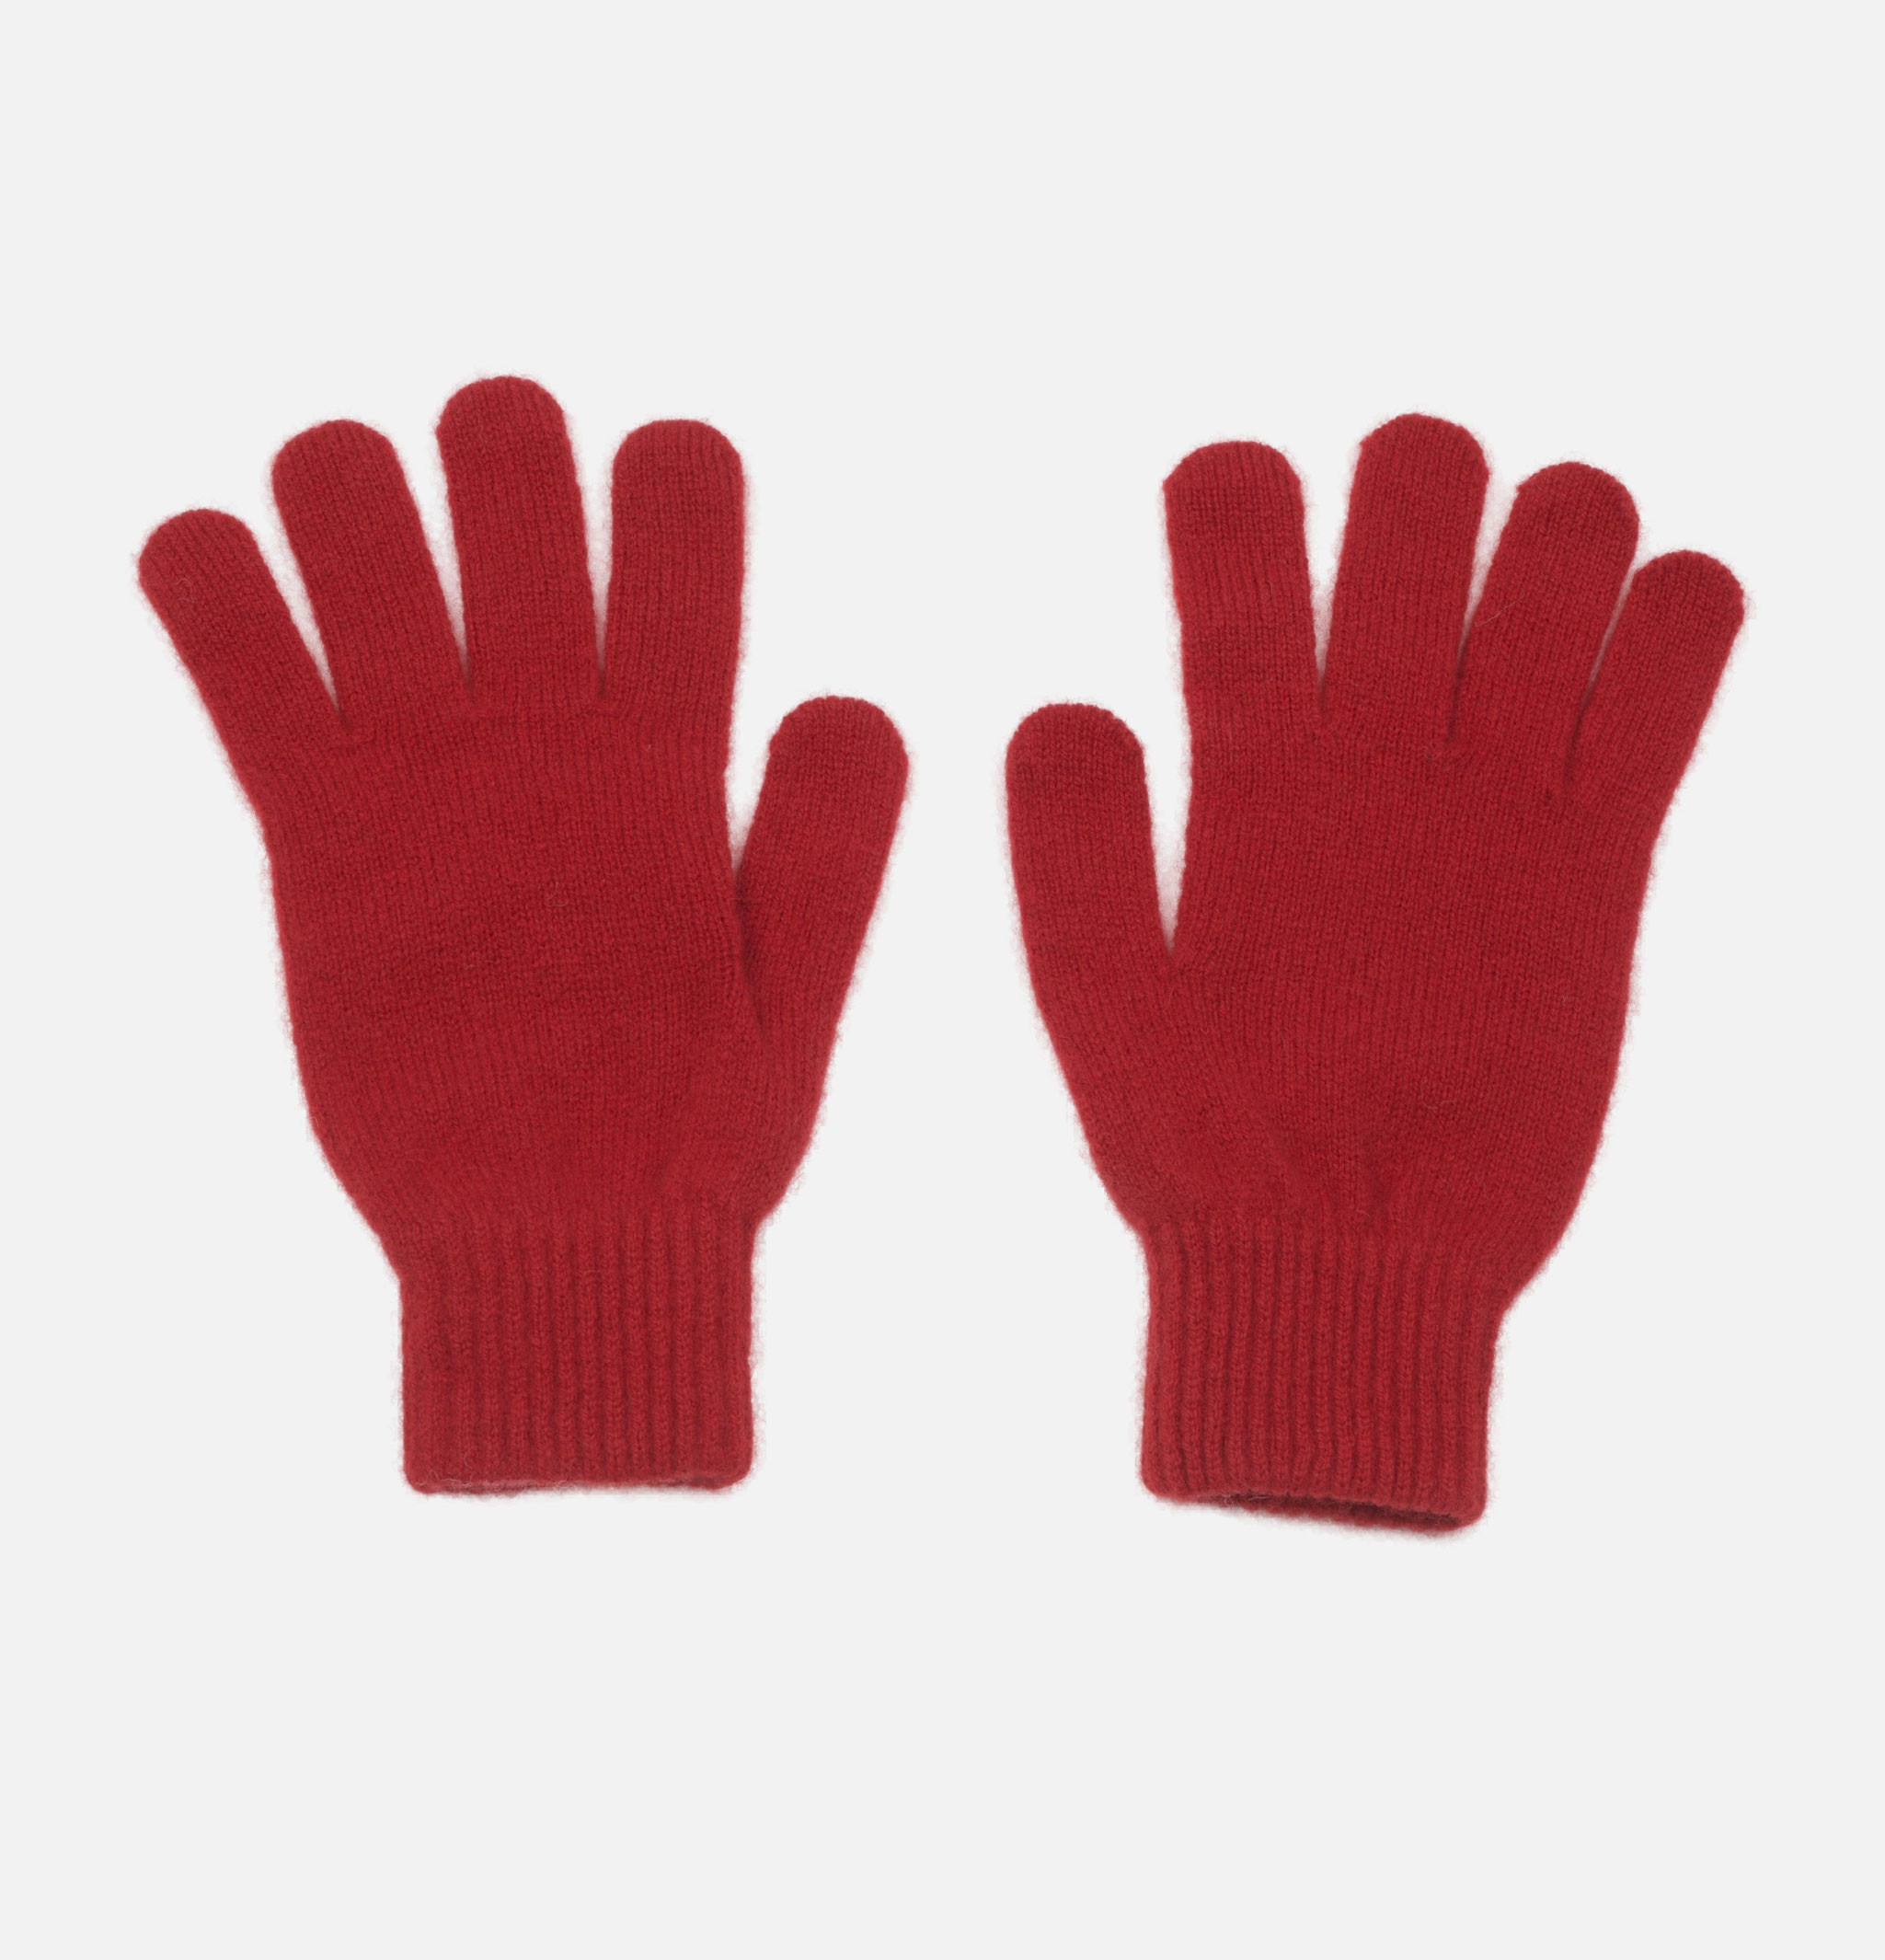 Munro Dubonnet gloves